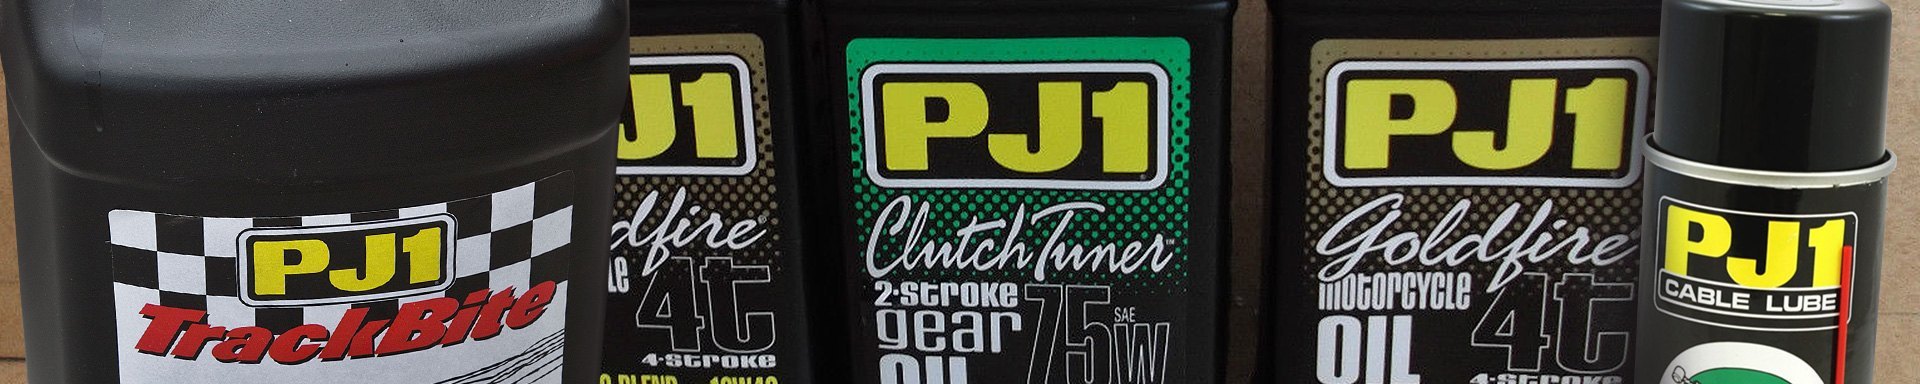 PJ1 Racing Gear